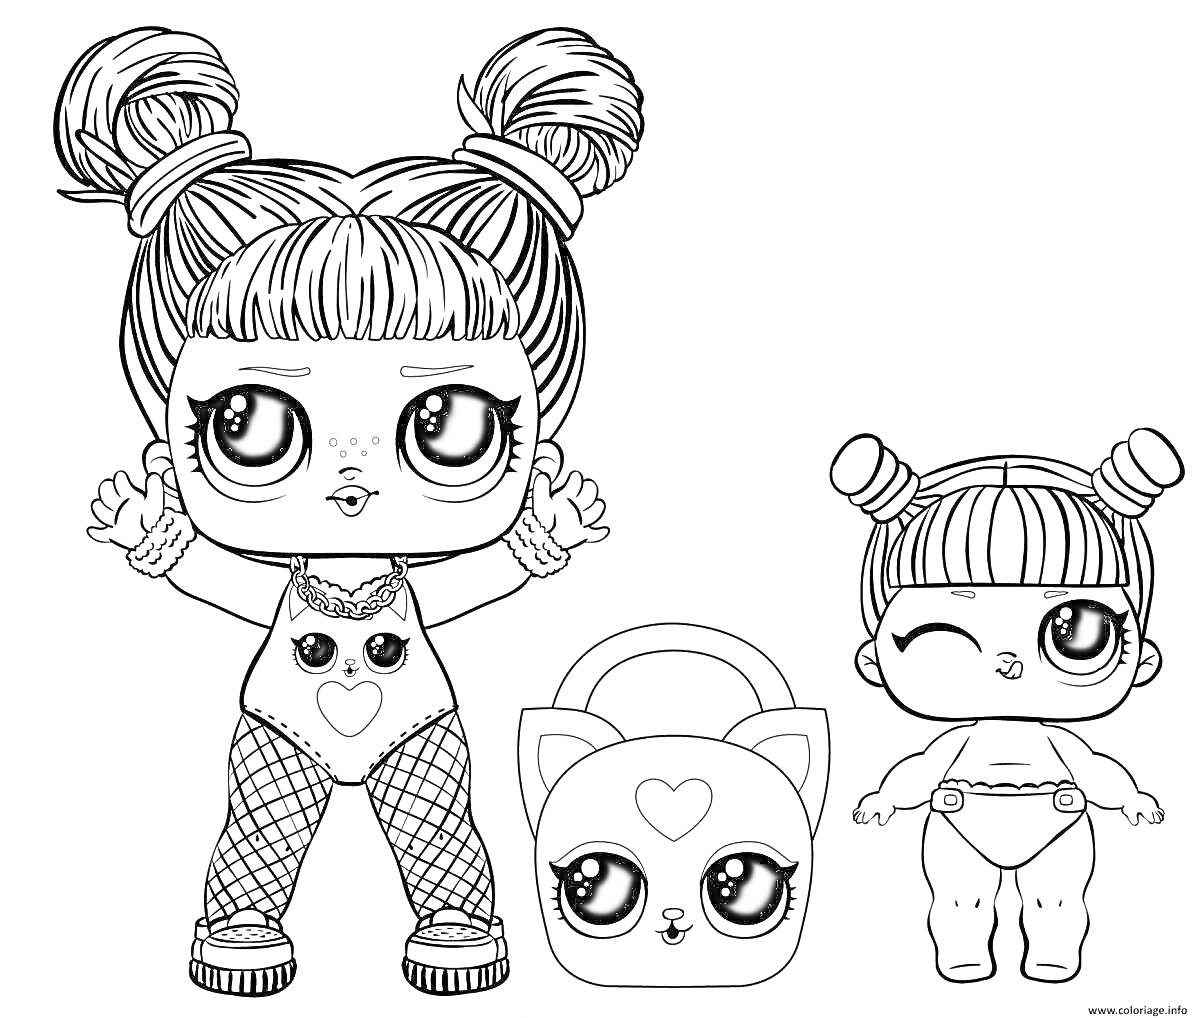 Раскраска Куклы LOL с рюкзаком в виде кошки, одна кукла с поднятыми руками в костюме и сетчатых колготках, вторая кукла меньшего размера, подмигивающая